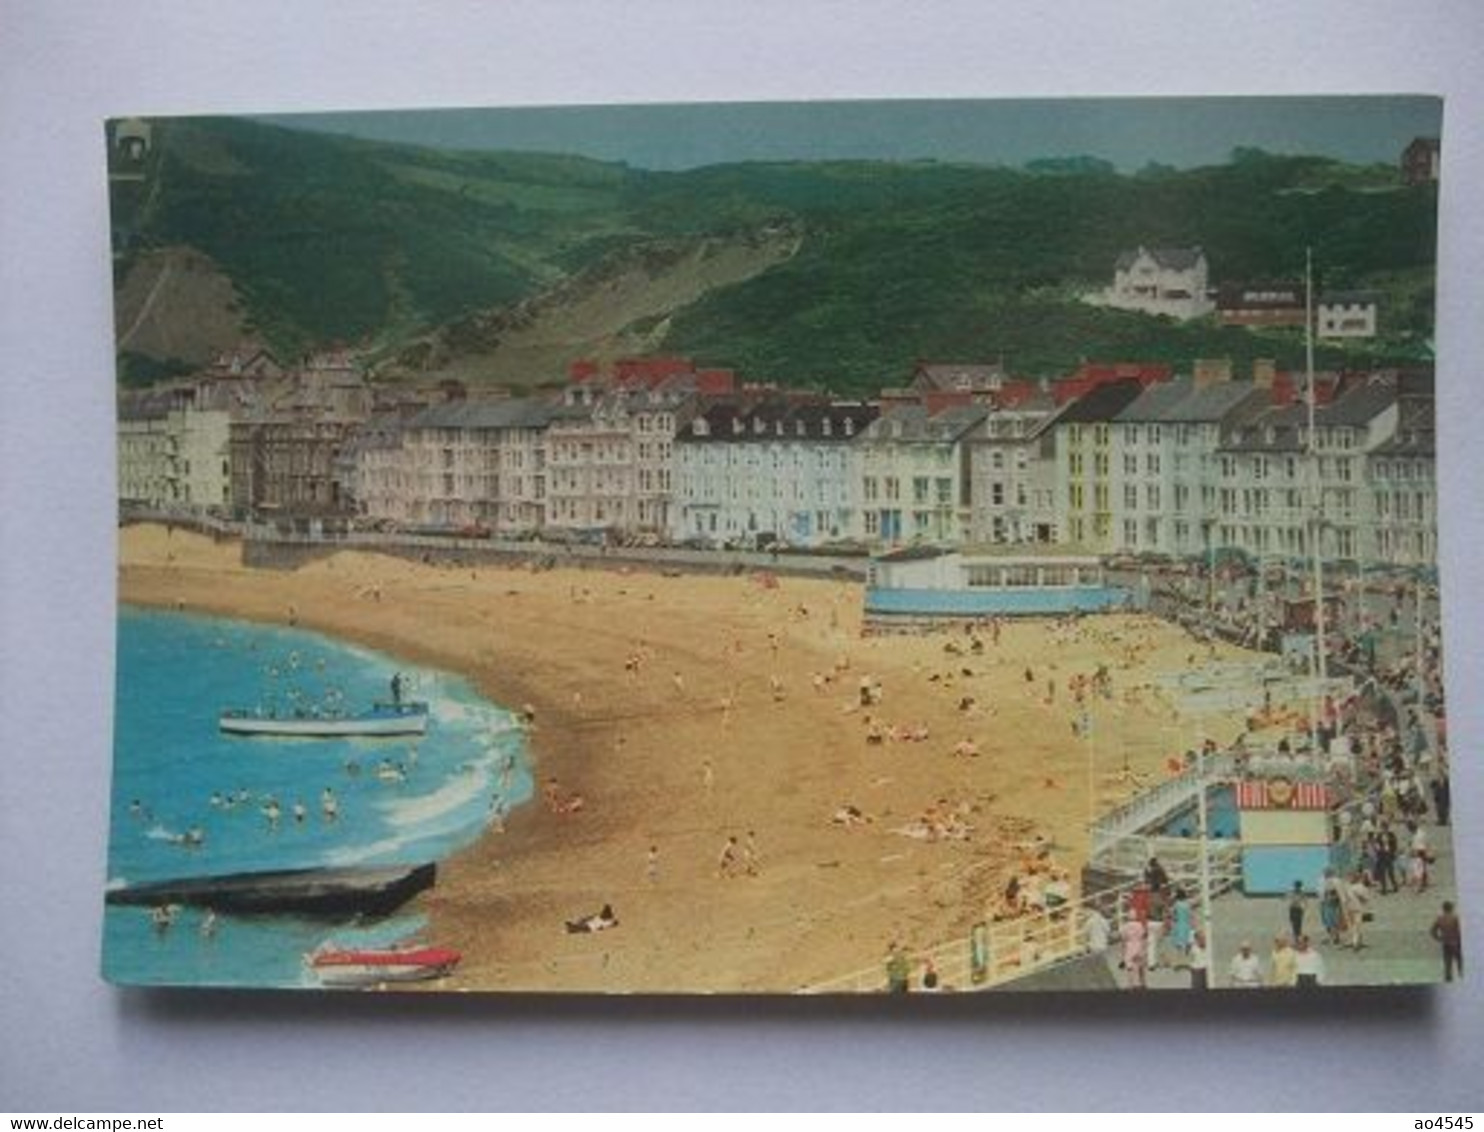 S06 Postcard Aberystwyth - Cardiganshire